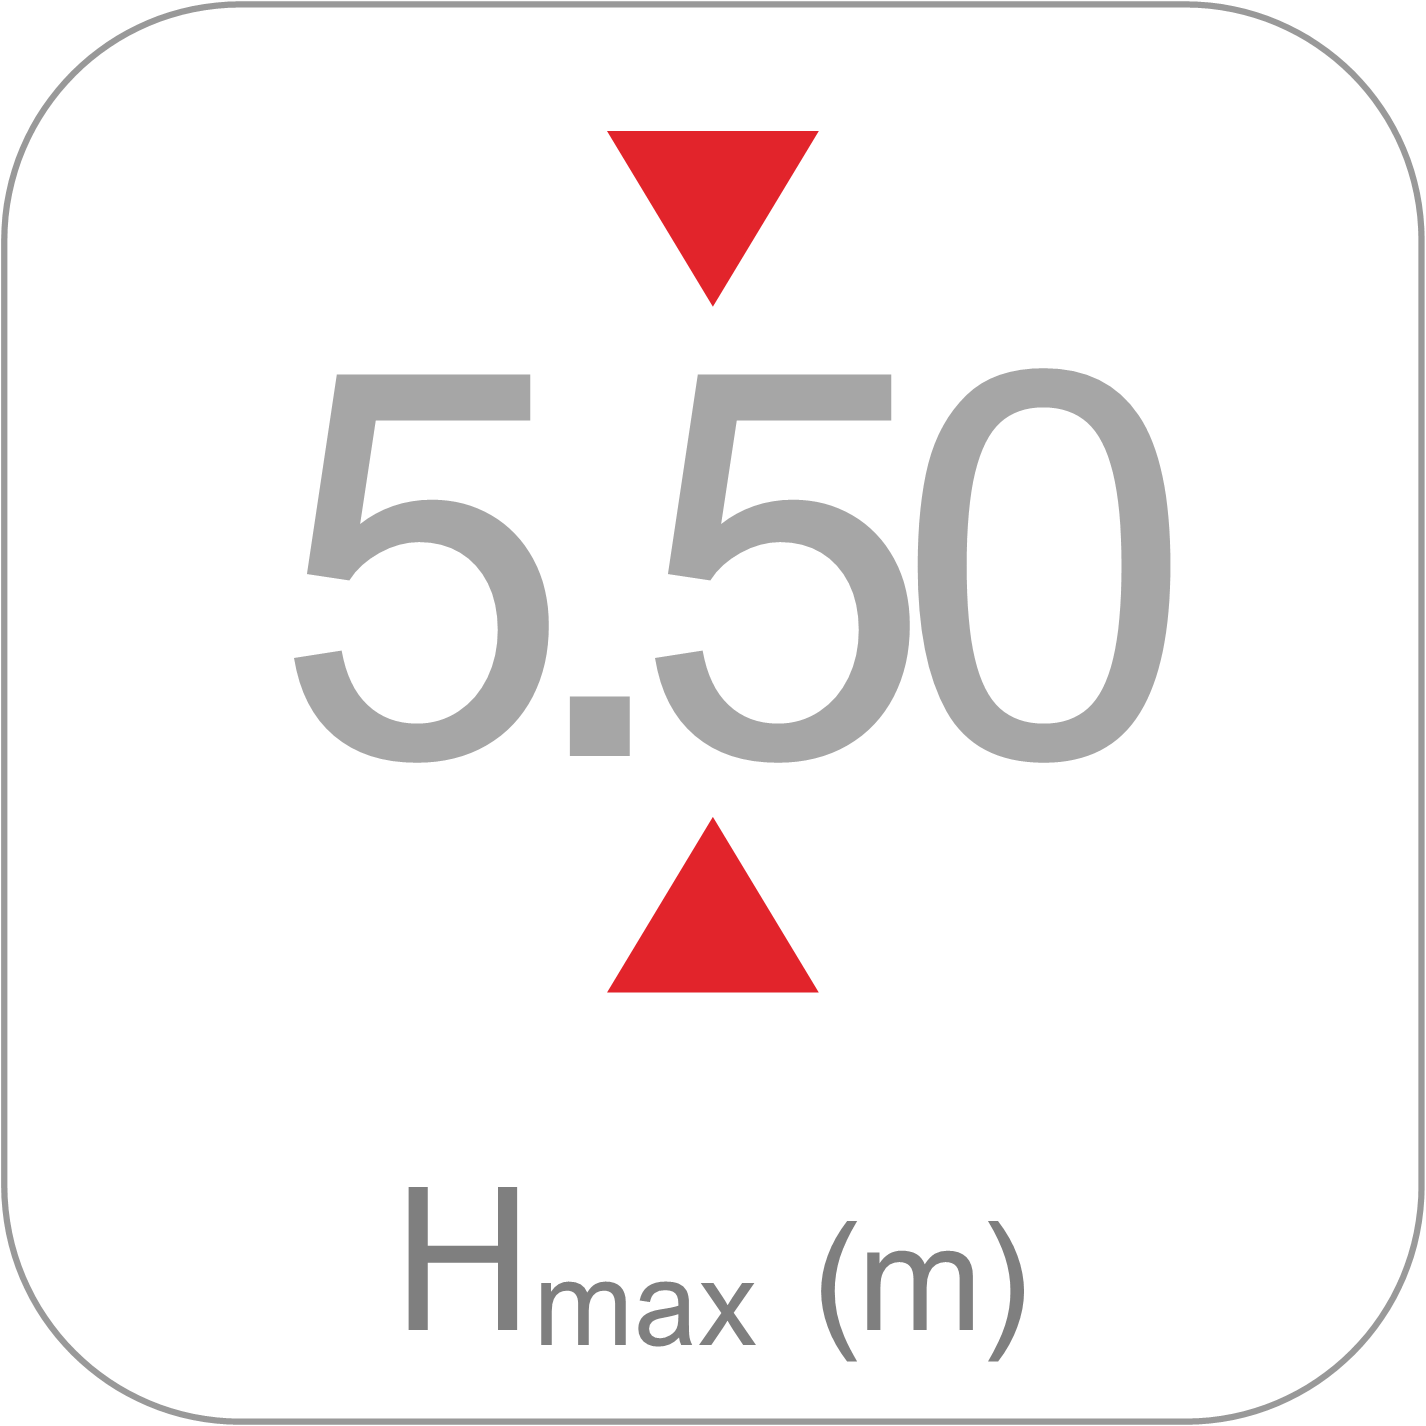 Puntales Clase D - Hmax 550